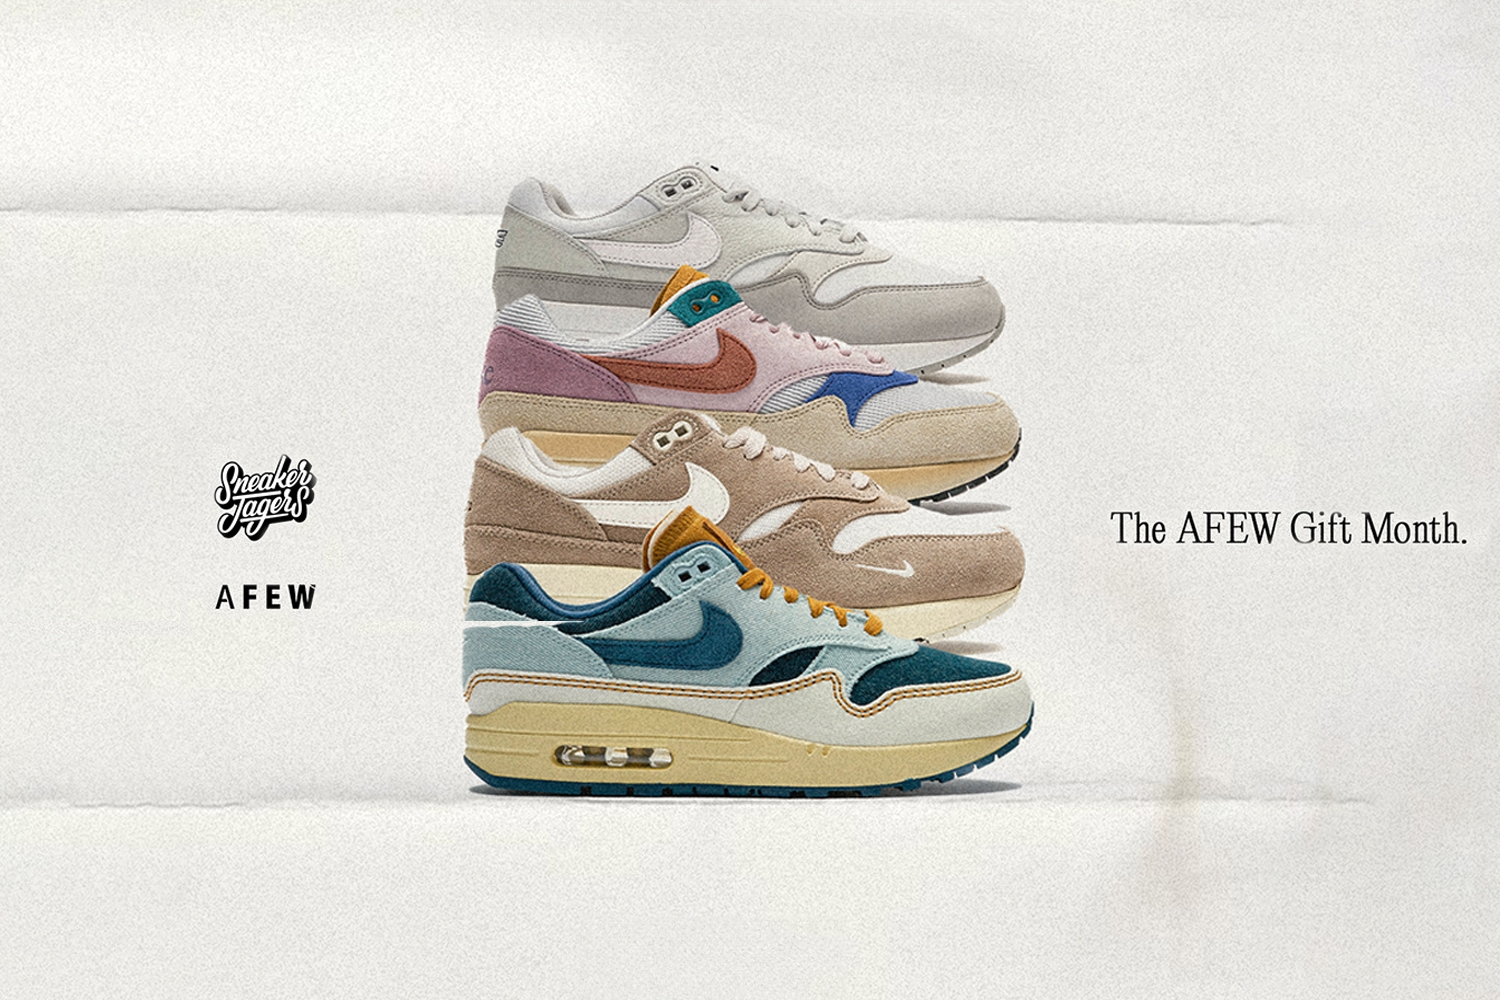 Laatste kans! AFEW Gift Month x Sneakerjagers - Air Max 1 giveaway